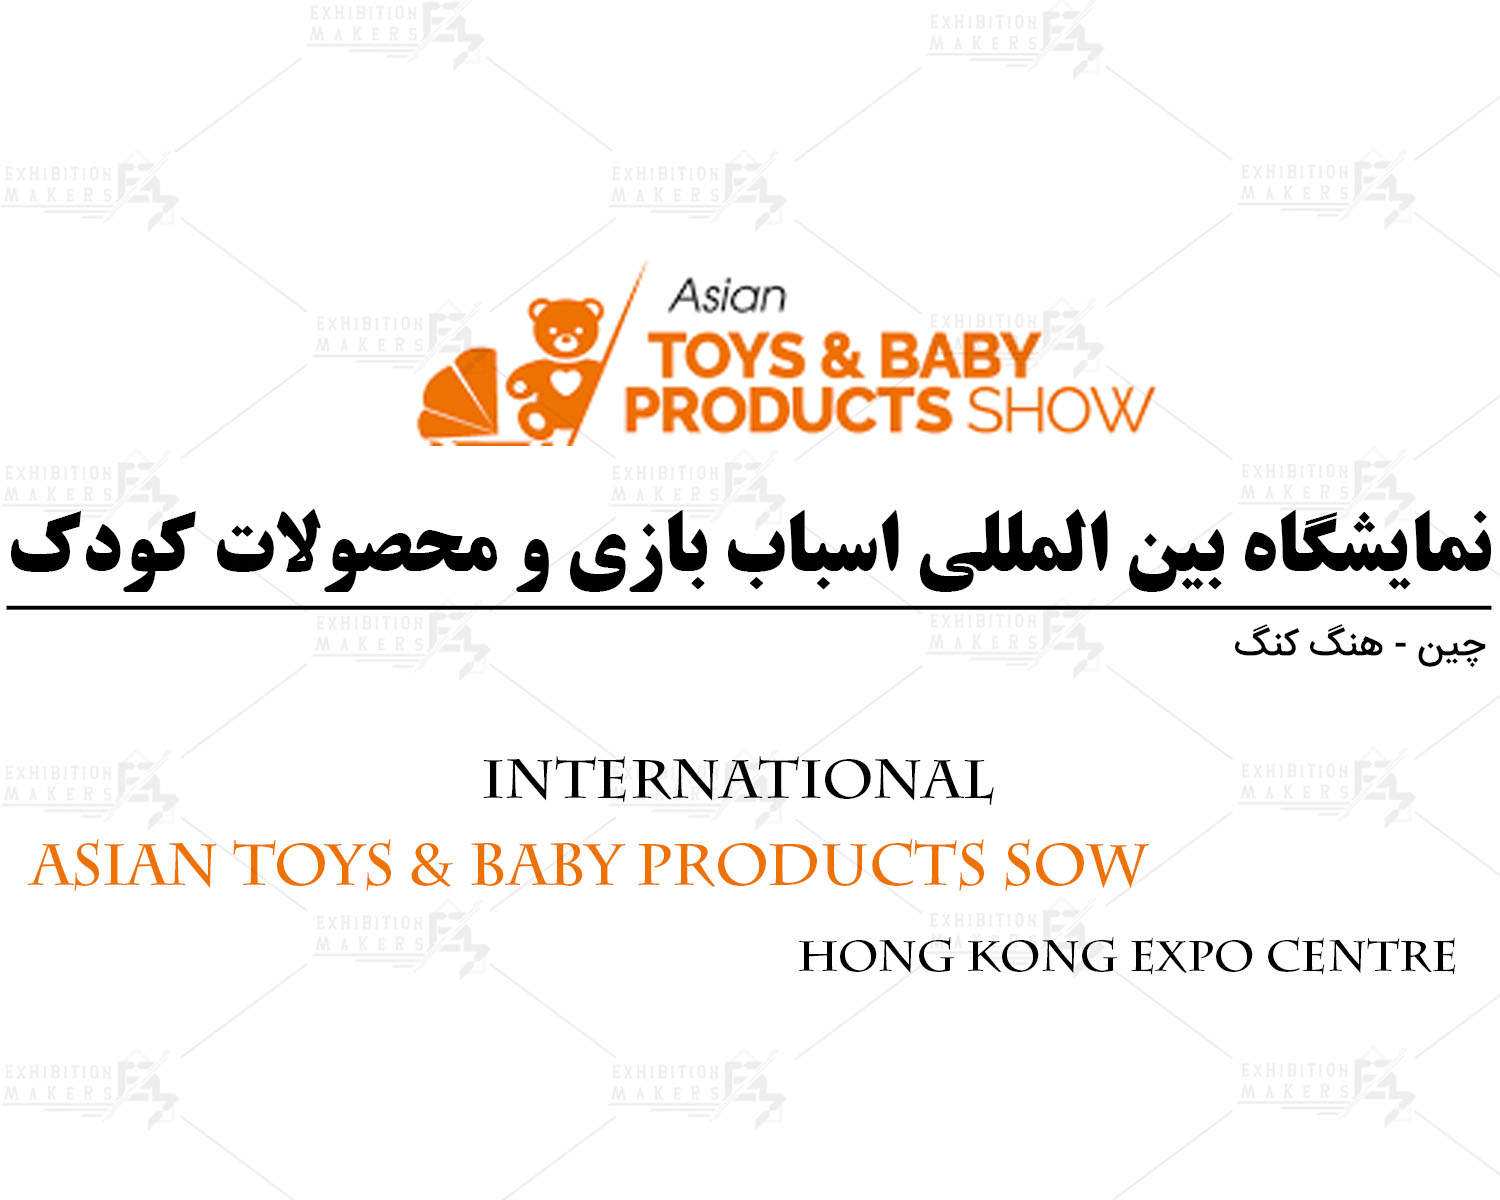 نمایشگاه محصولات کودک چین هنگ کنگ